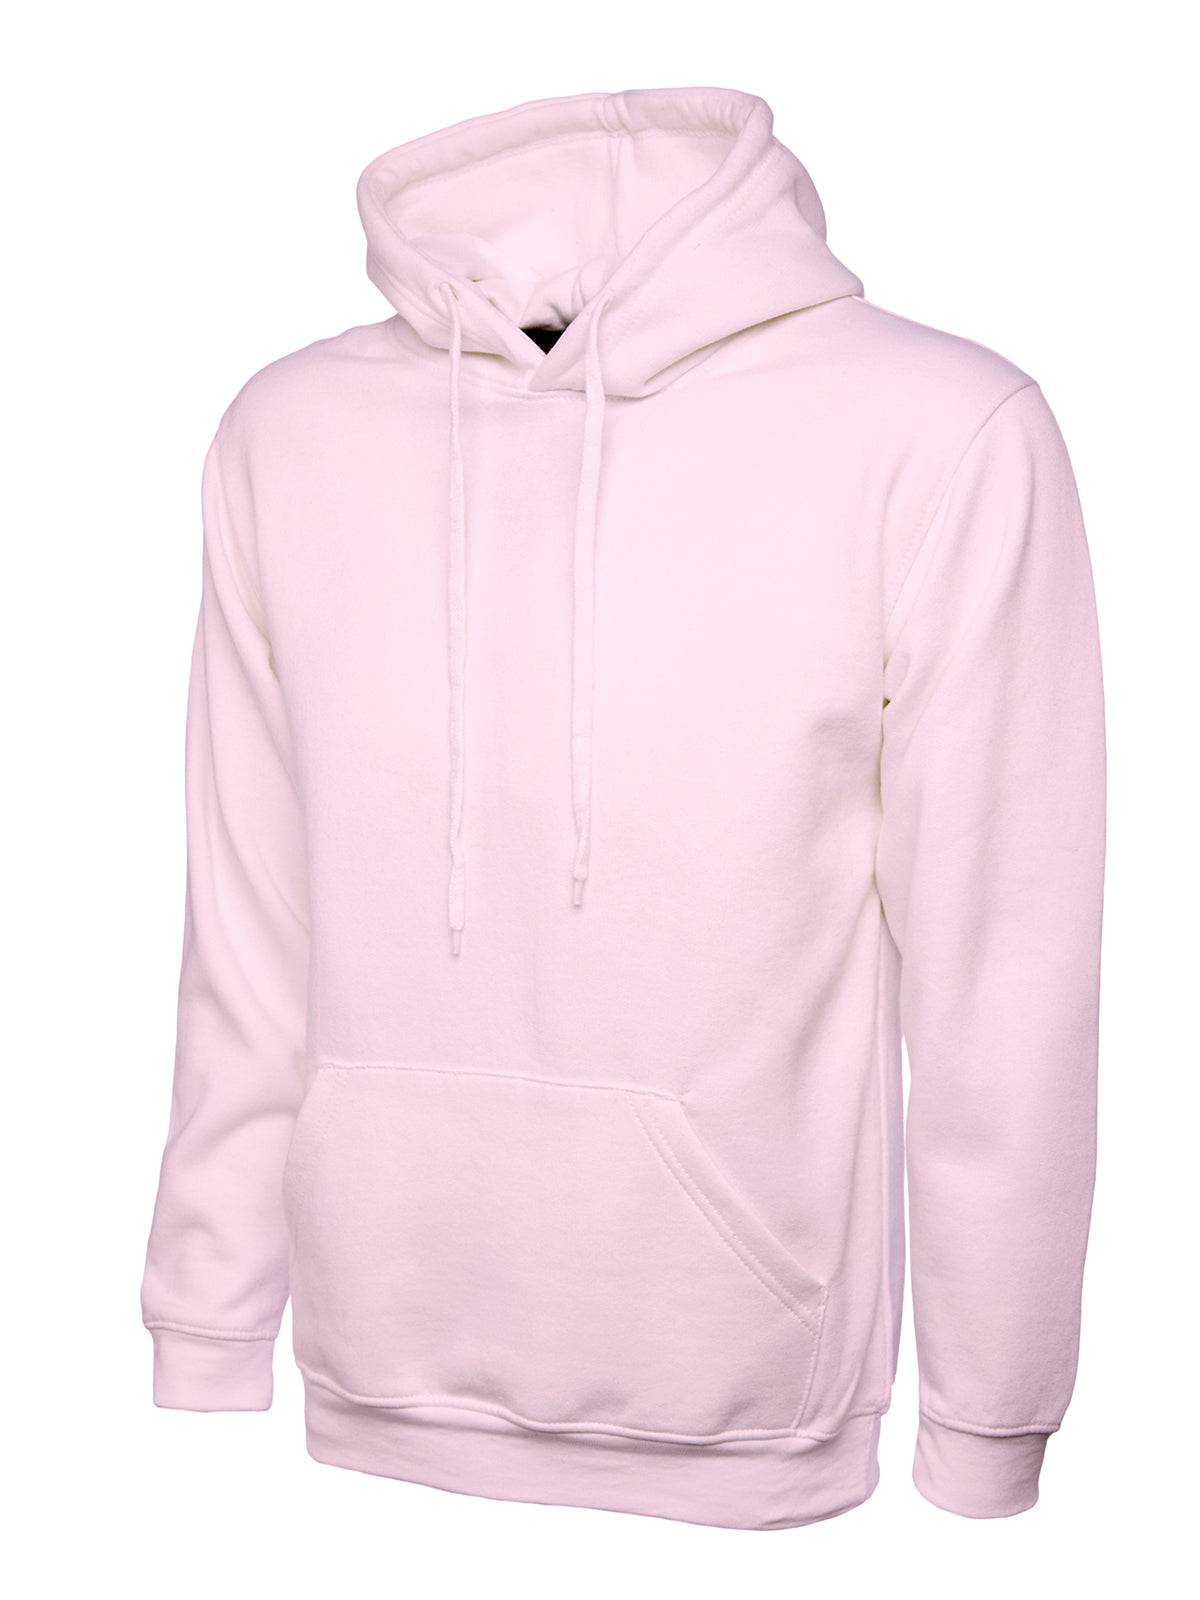 Uneek Classic Hoodie Sweatshirt - Pink